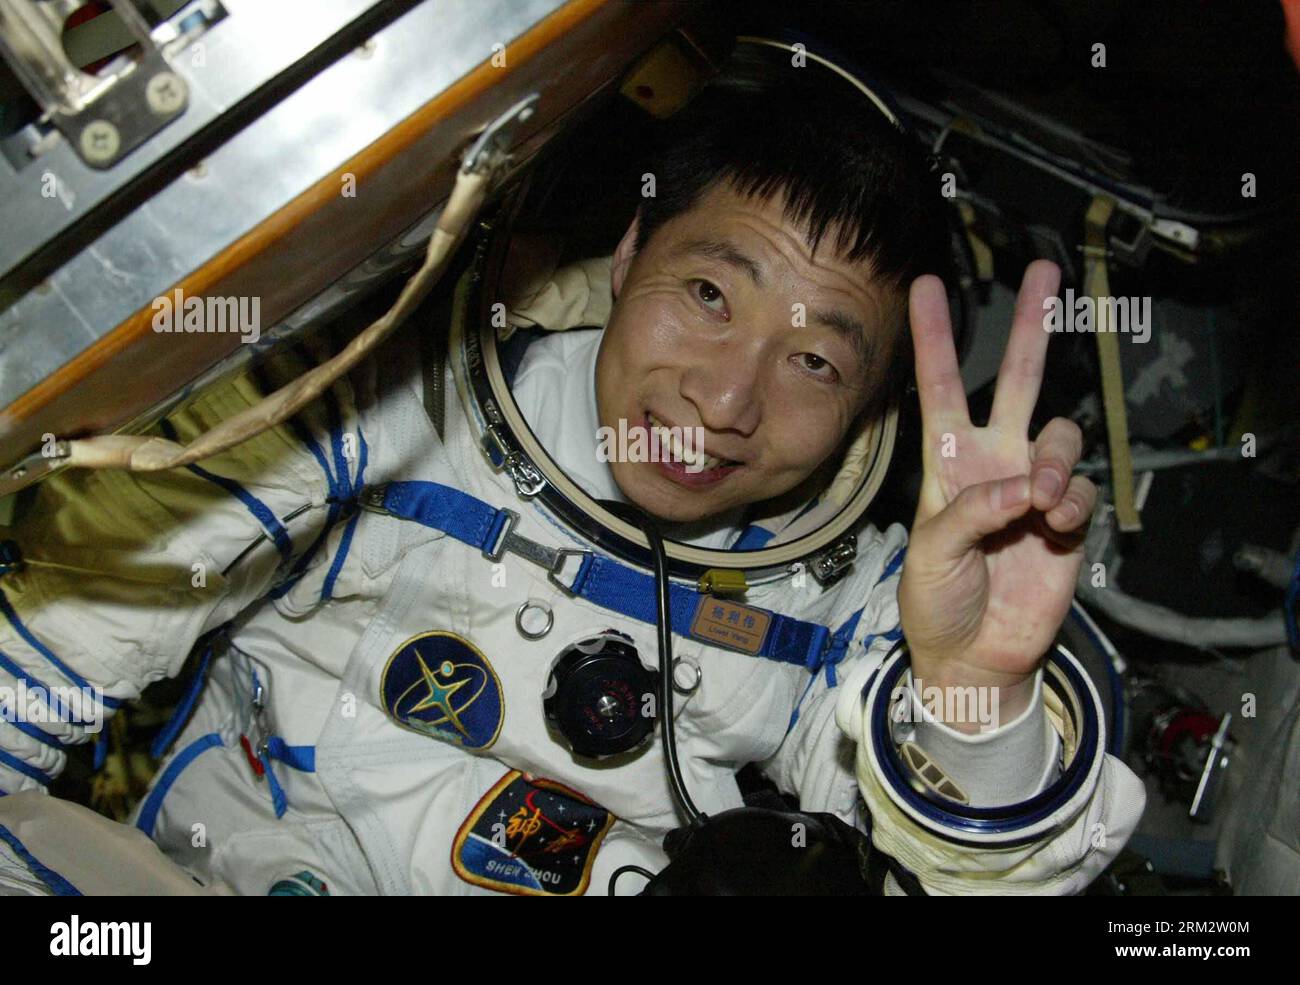 Bildnummer: 59903271 Datum: 26.06.2013 Copyright: Imago/XINHUA (130626) -- PEKÍN, 26 de junio de 2013 (Xinhua) -- Foto de archivo tomada el 16 de octubre de 2003 muestra al astronauta Yang Liwei saliendo de la cápsula de reentrada de la nave espacial Shenzhou-5 de China después de su exitoso aterrizaje en la Región Autónoma de Mongolia Interior del norte de China. Un total de 10 astronautas chinos han cumplido su misión espacial en los últimos 10 años. (Xinhua/Wang Jianmin) (RY) CHINA-SCIENCE-ASTRONAUTAS (CN) PUBLICATIONxNOTxINxCHN Wissenschaft Raumfahrt Landung Astronaut Rückkehr Fotostory xas x0x 2013 quer Aufmacher premi Foto de stock